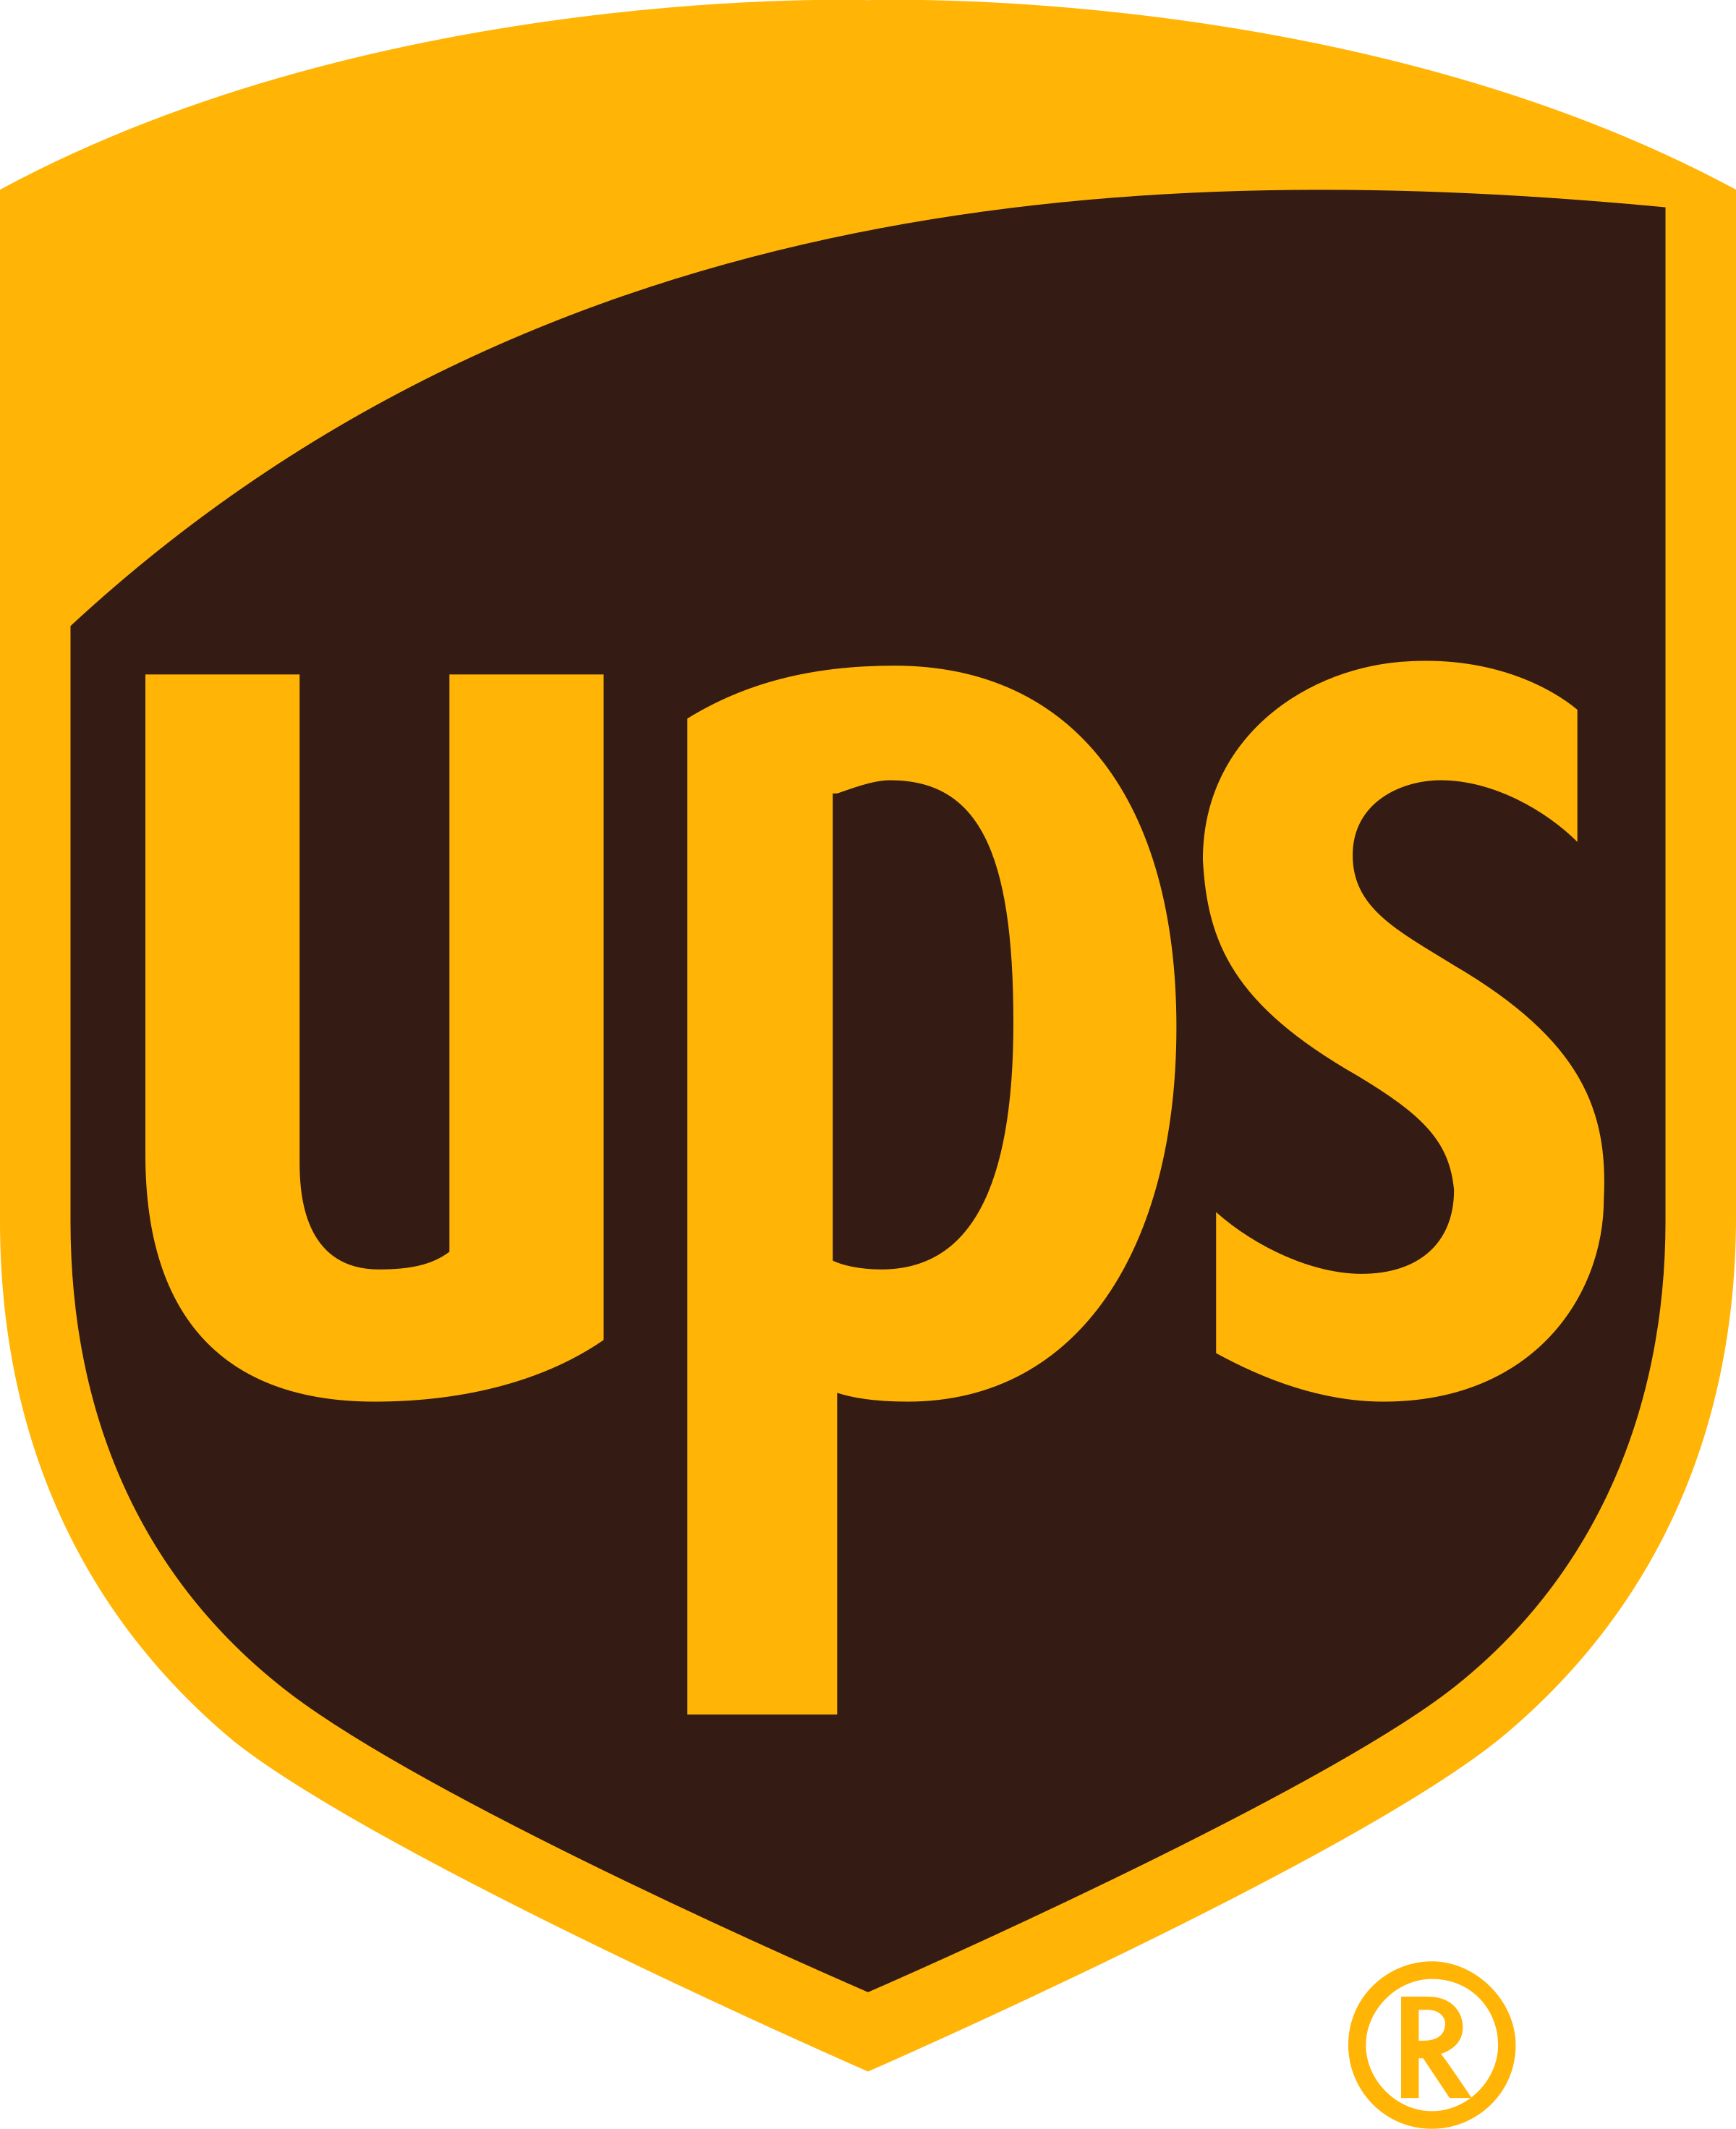 Die United States Agentur Altered State Productions half UPS dabei, sein Geschäft mit SEO und digitalem Marketing zu vergrößern